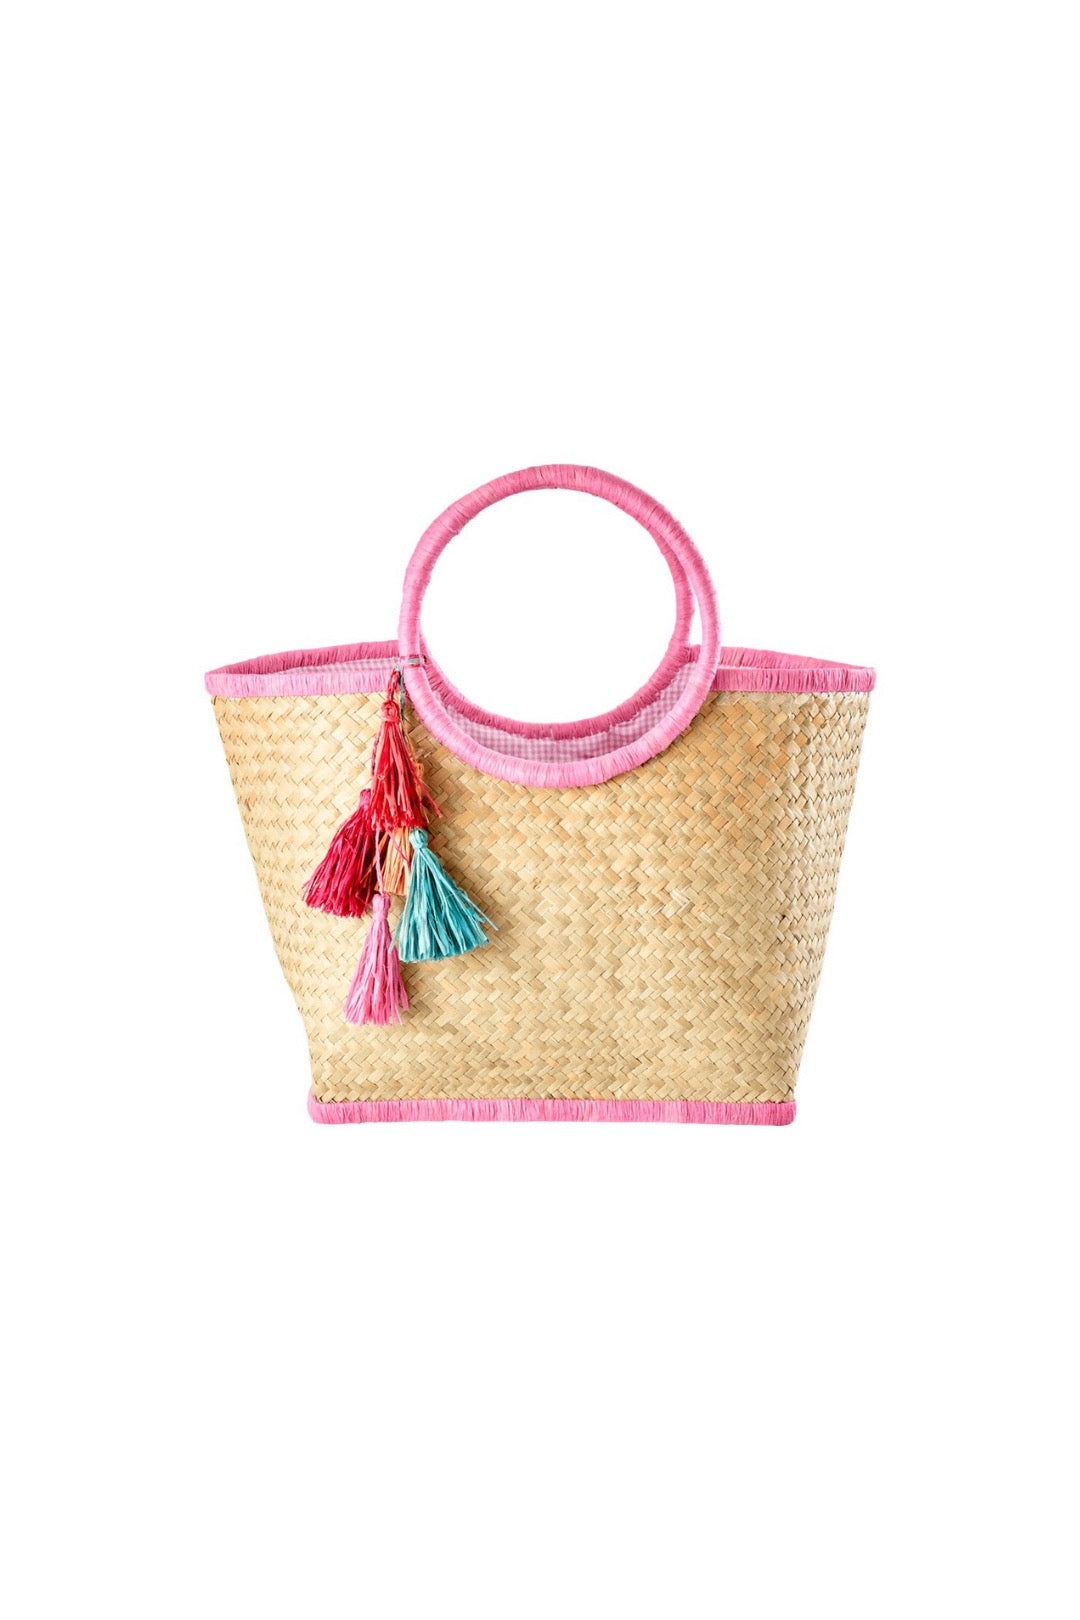 Raffia Bag with Tassels Pink